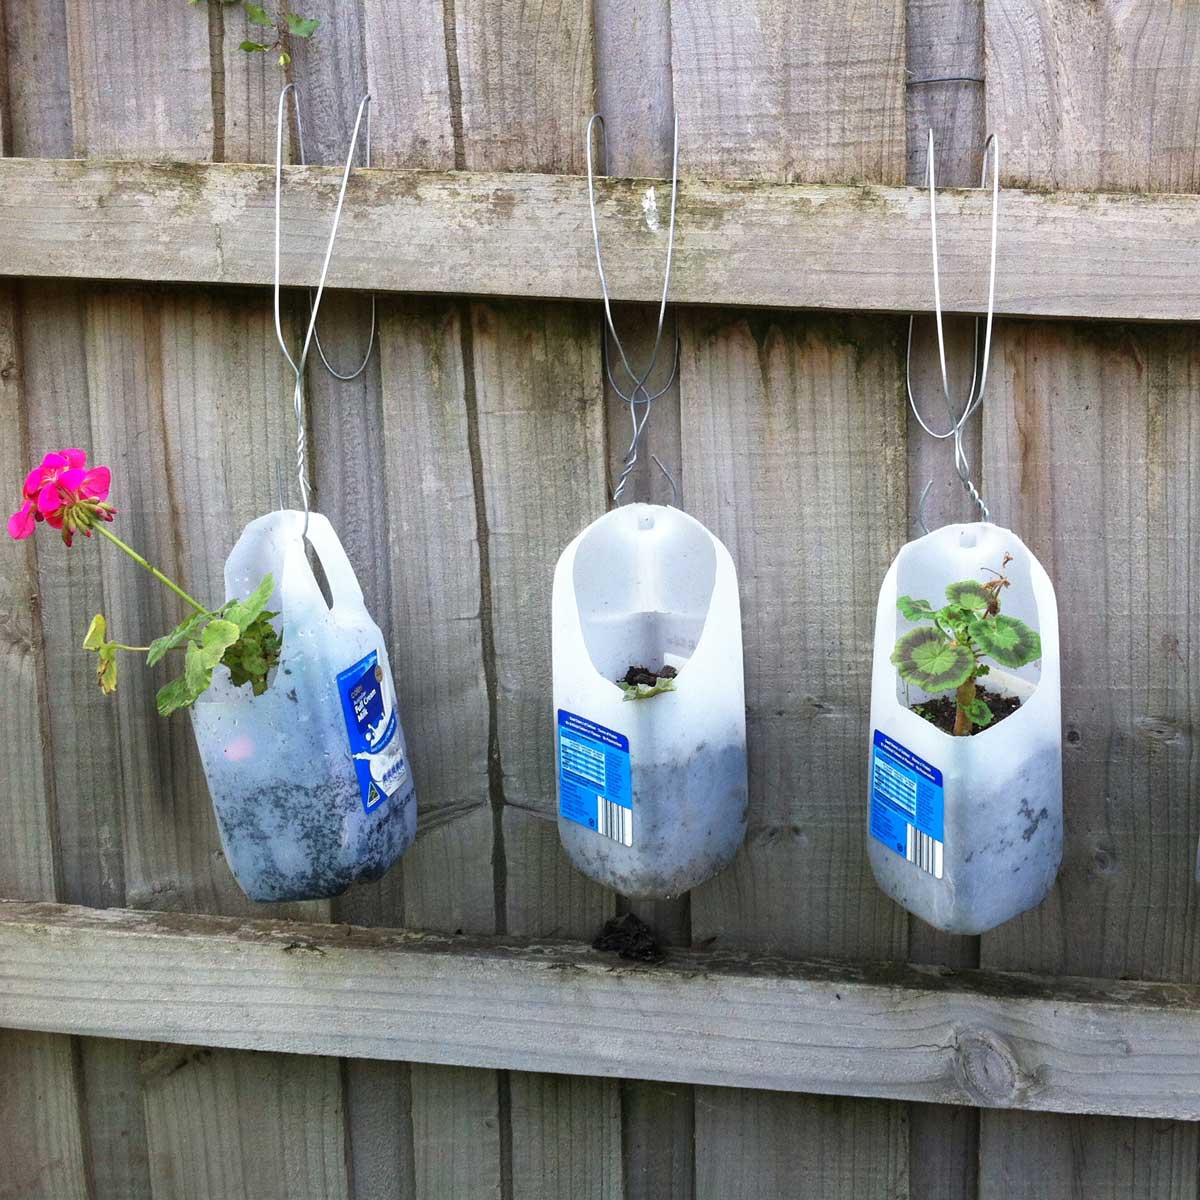 plastic bottle planters